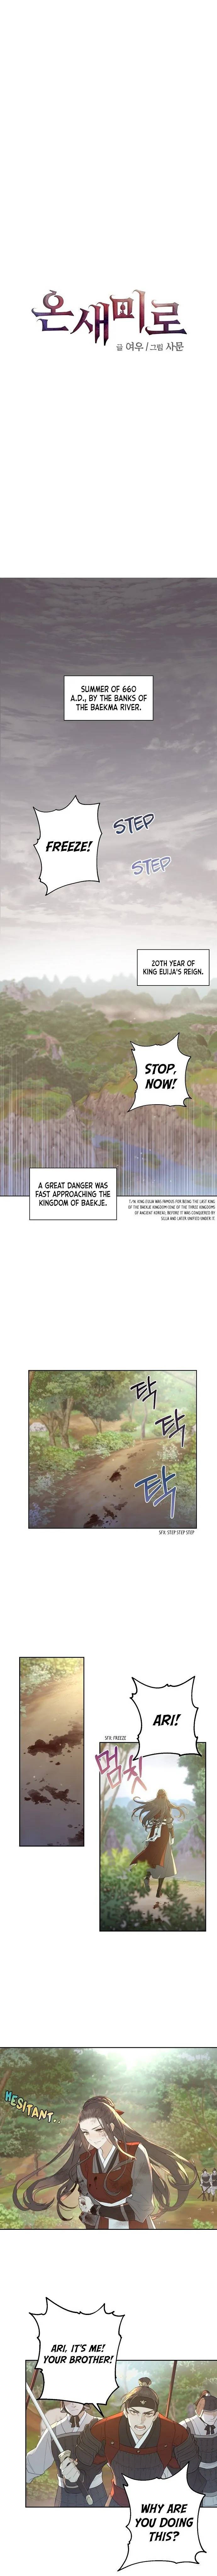 Onsaemiro - Chapter 0 Page 1